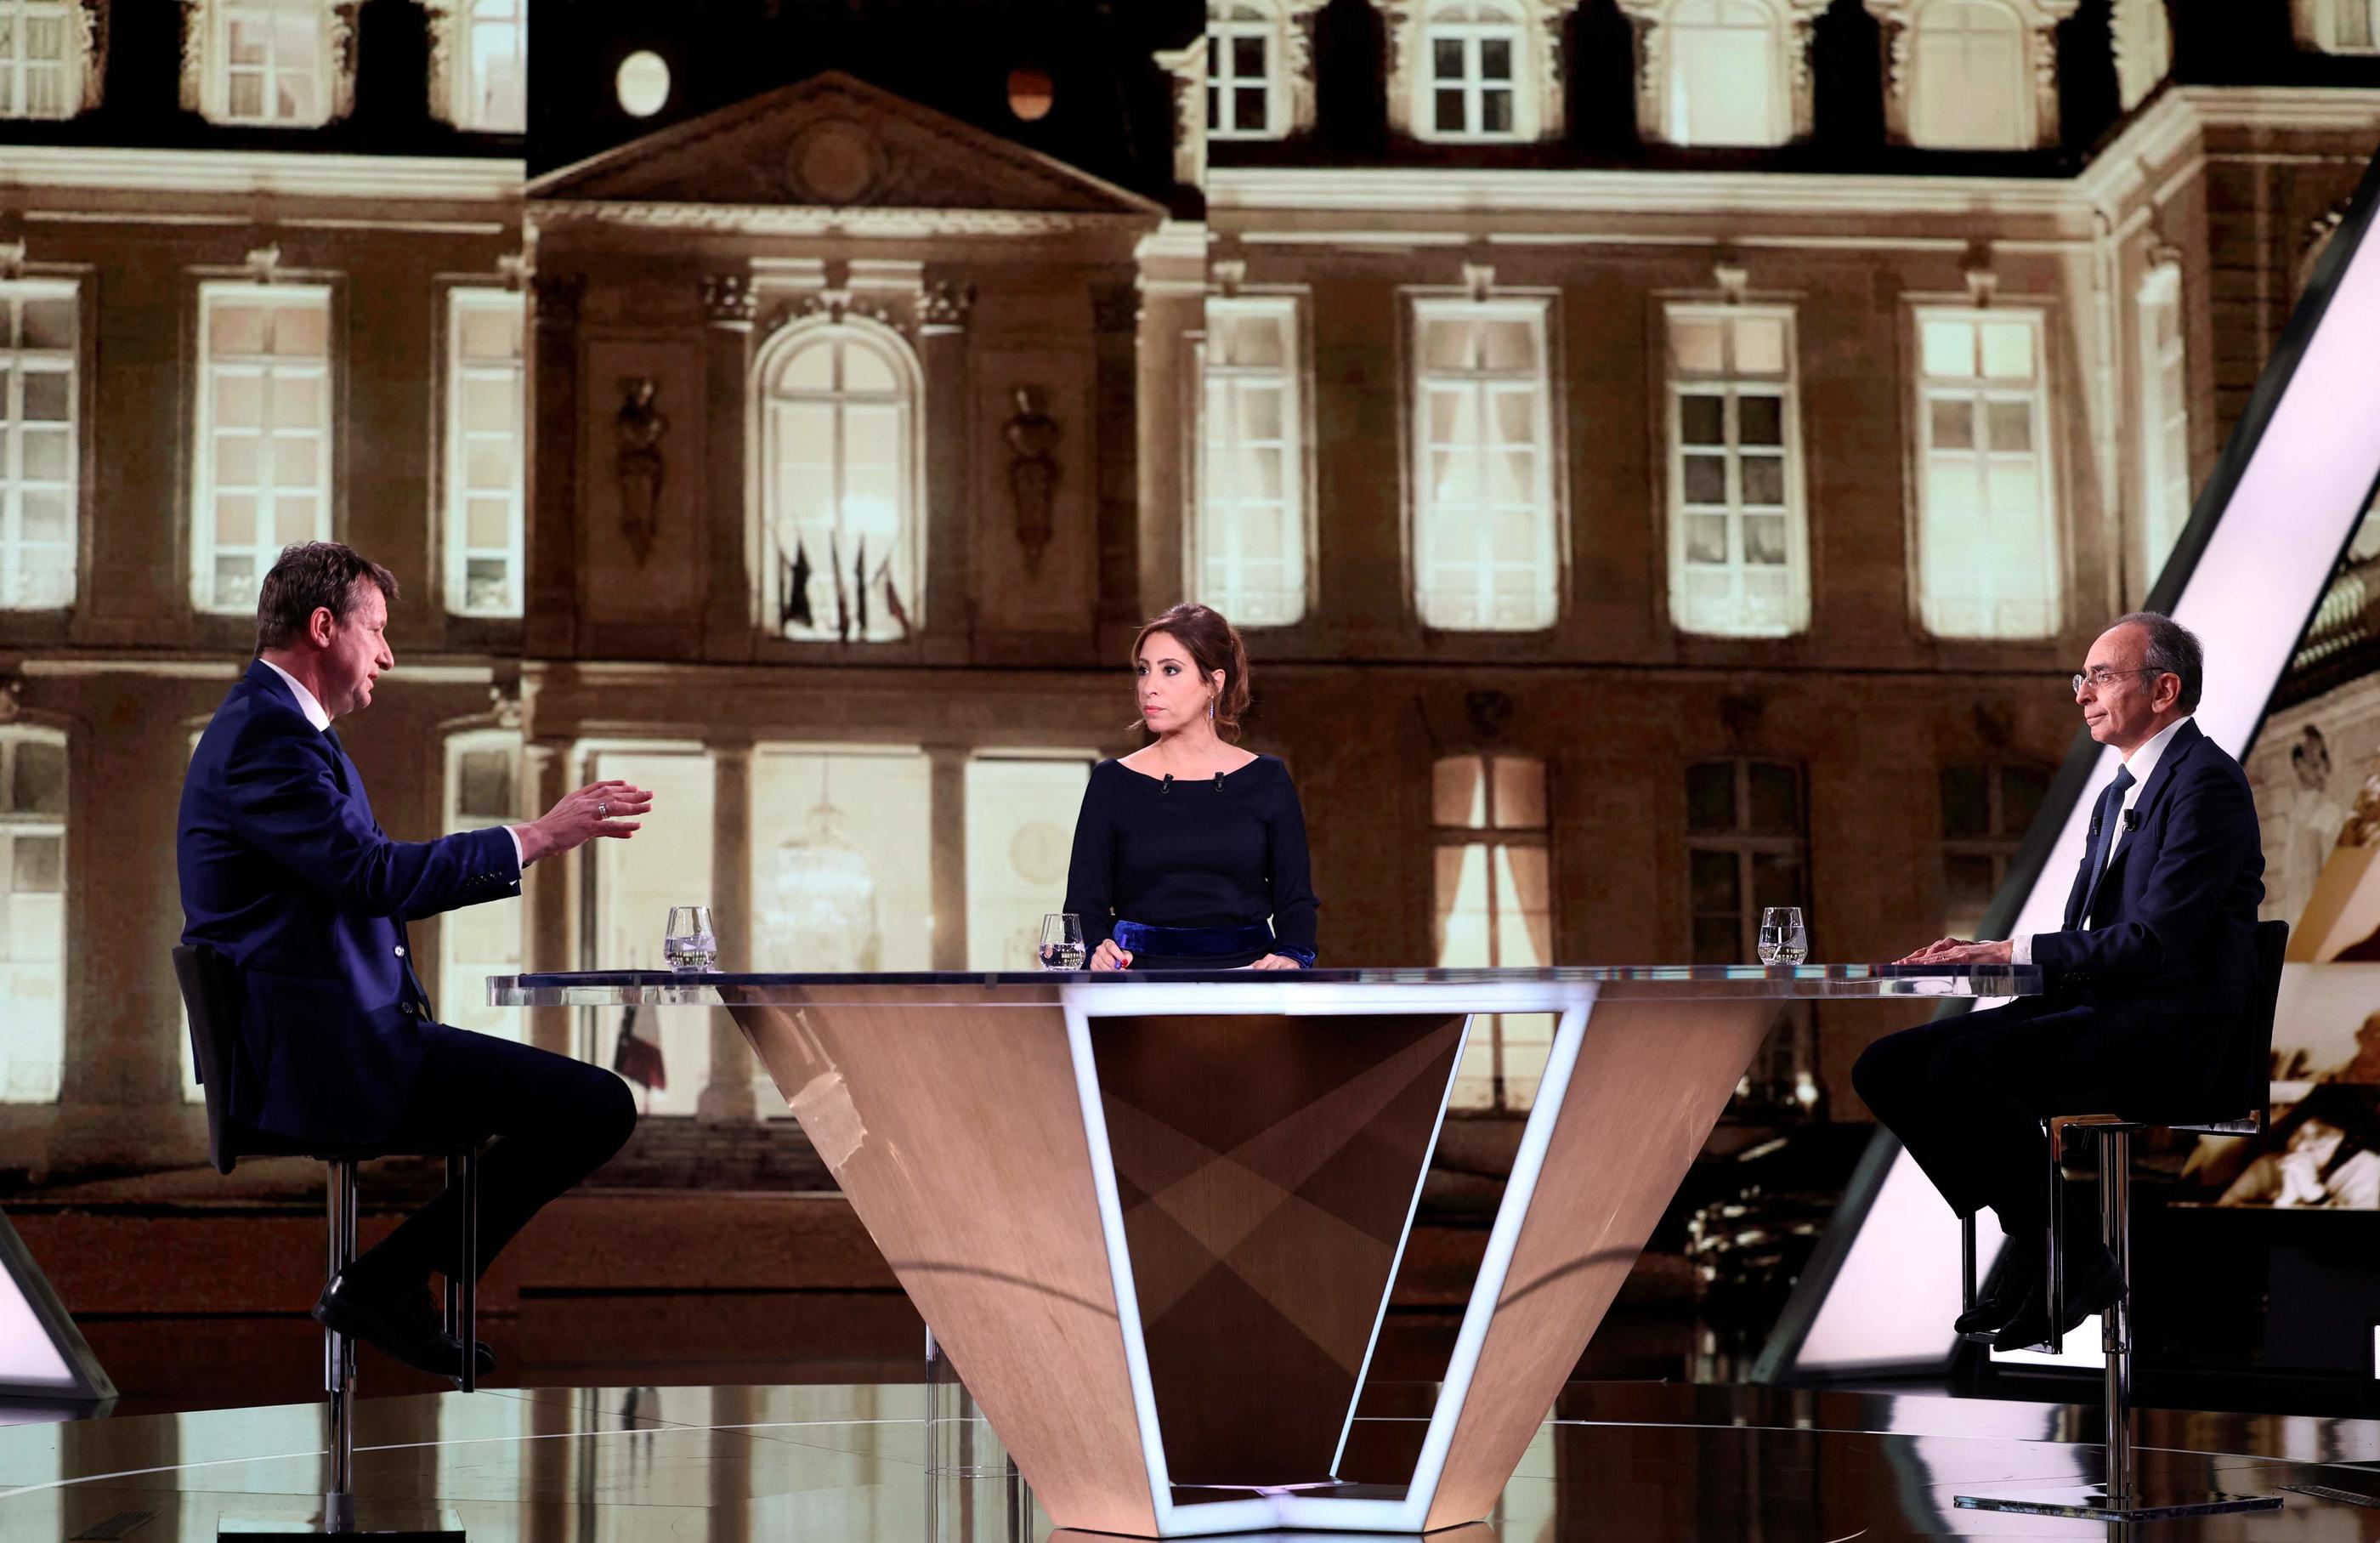 Le débat entre Eric Zemmour et Yannick Jadot fut très animé. AFP/THOMAS COEX